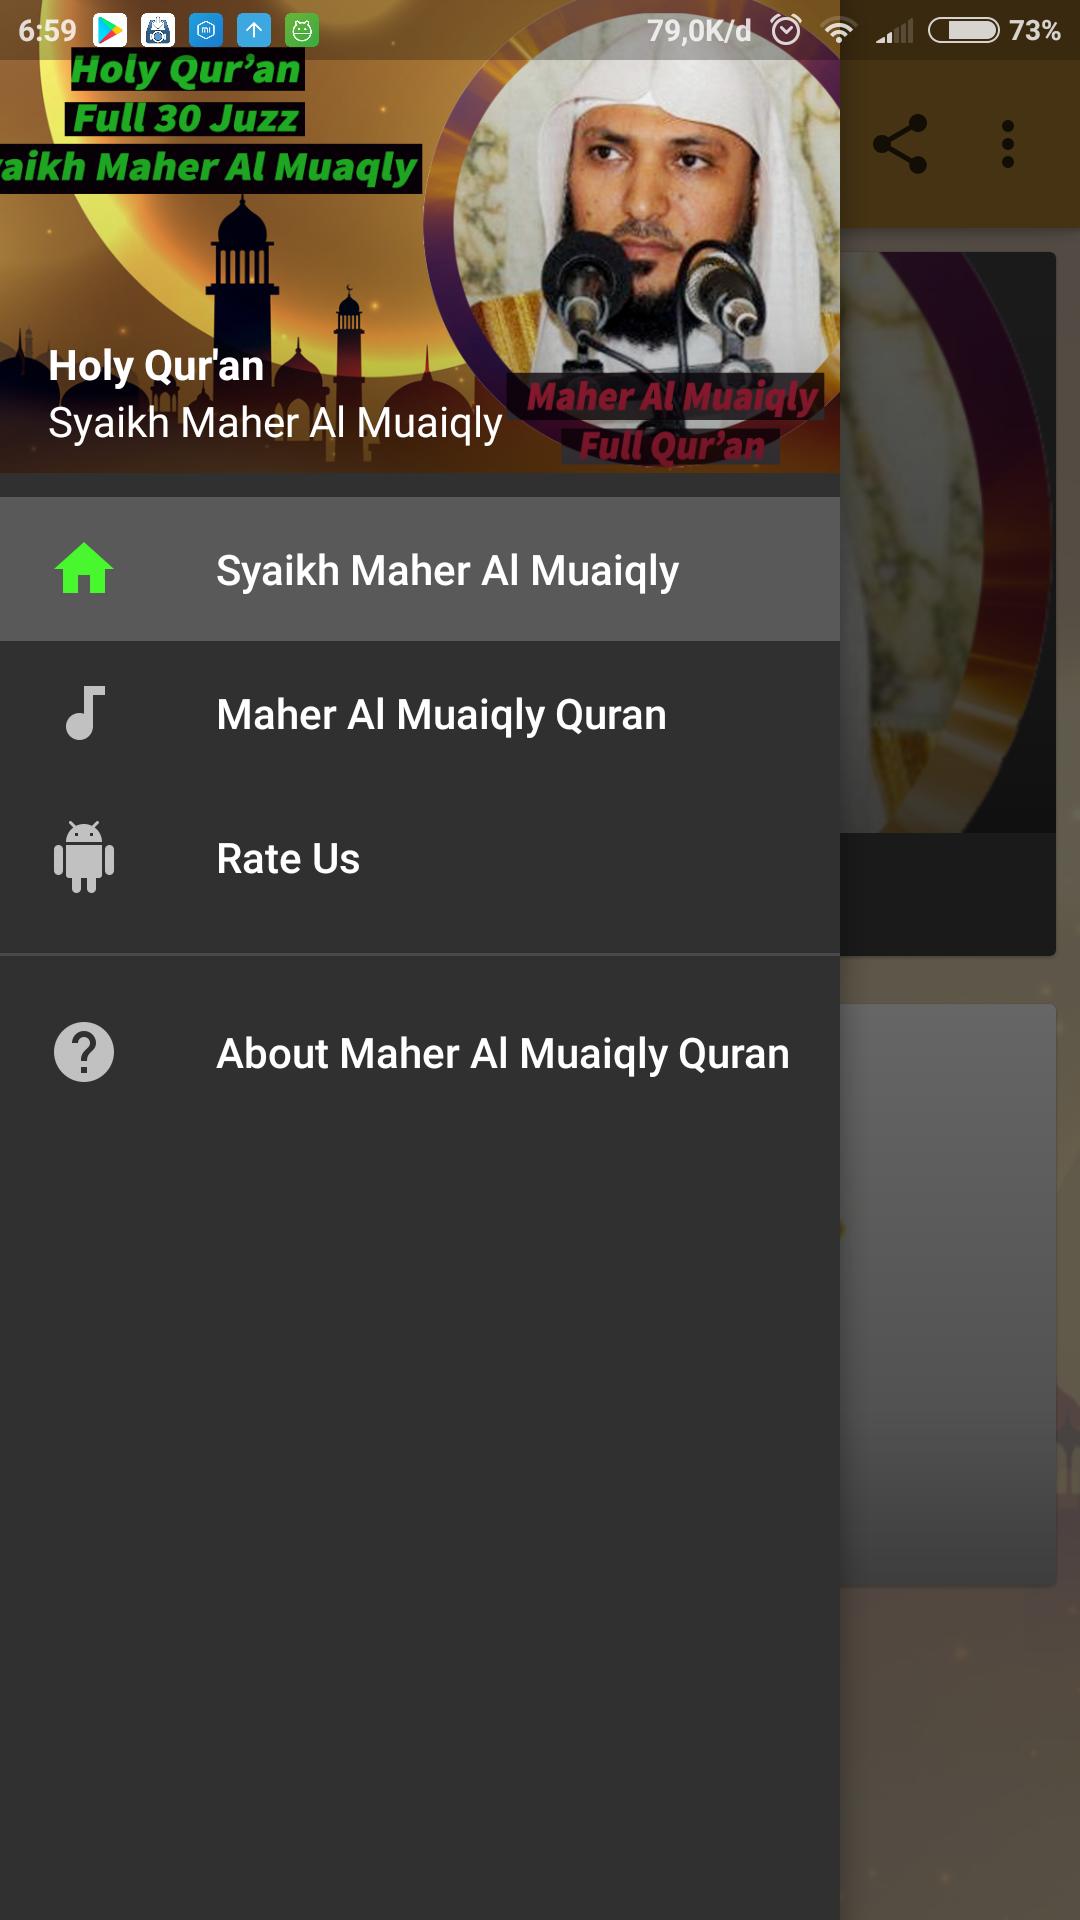 Full Quran Mp3 - Maher Al Muaiqly for Android - APK Download